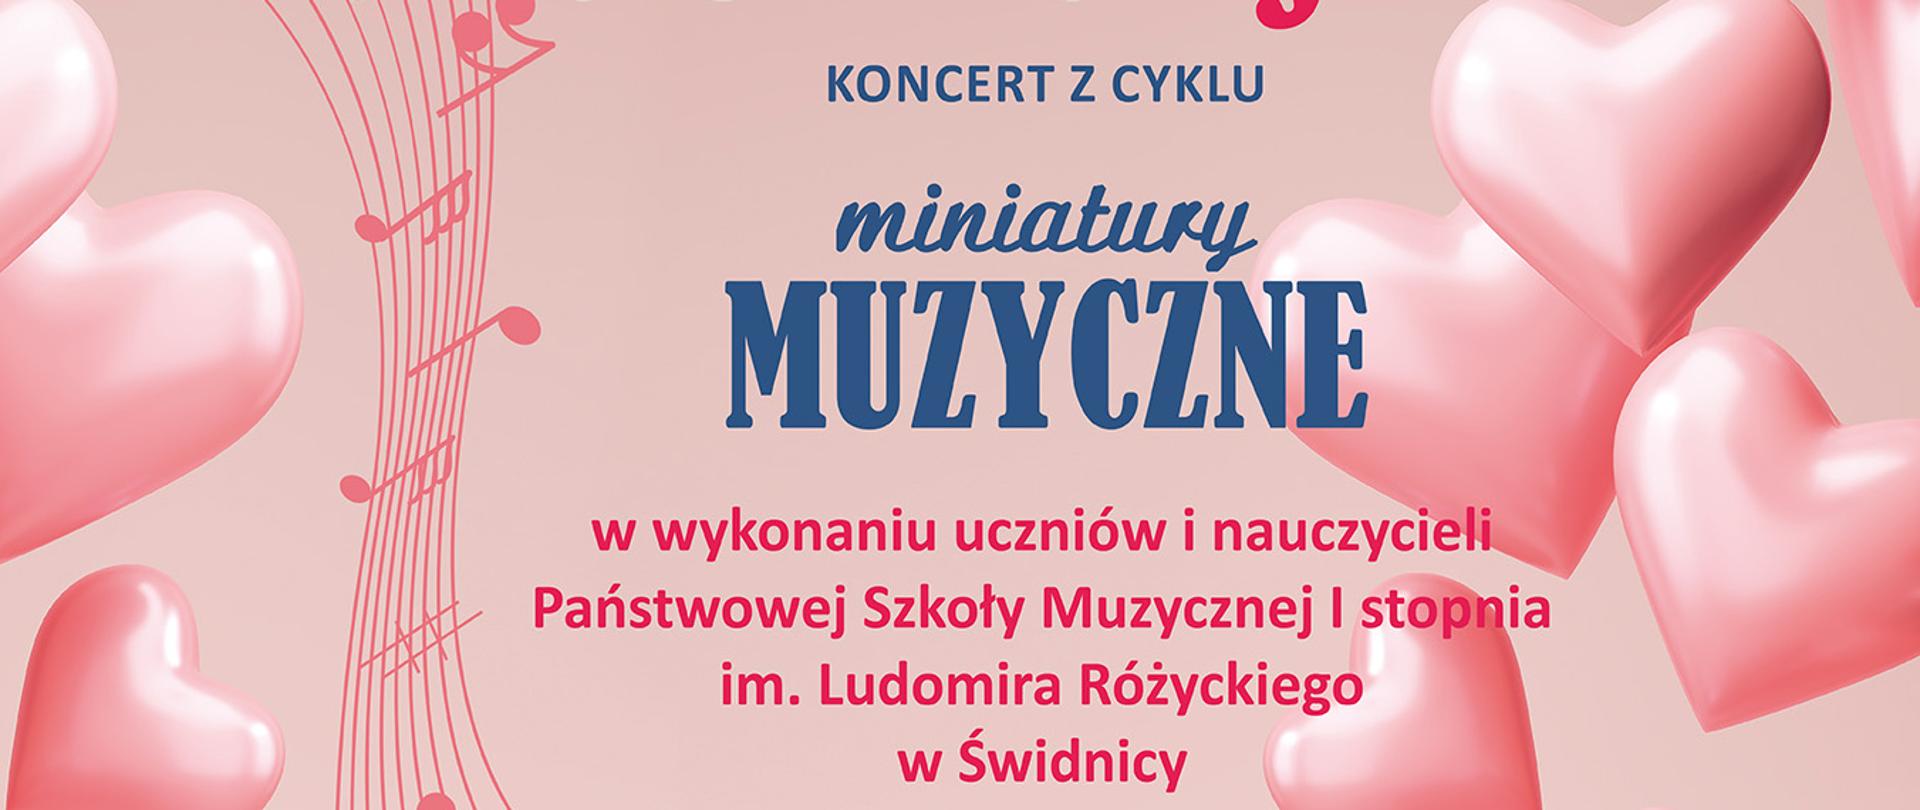 Plakat informujący o koncercie w galerii fotografii w Świdnicy, różowe tło , po prawej i lewej stronie ikony seduszek -kolor różowy na tym tle napisy czerwone i niebieskie informujące o koncercie i miejscu.